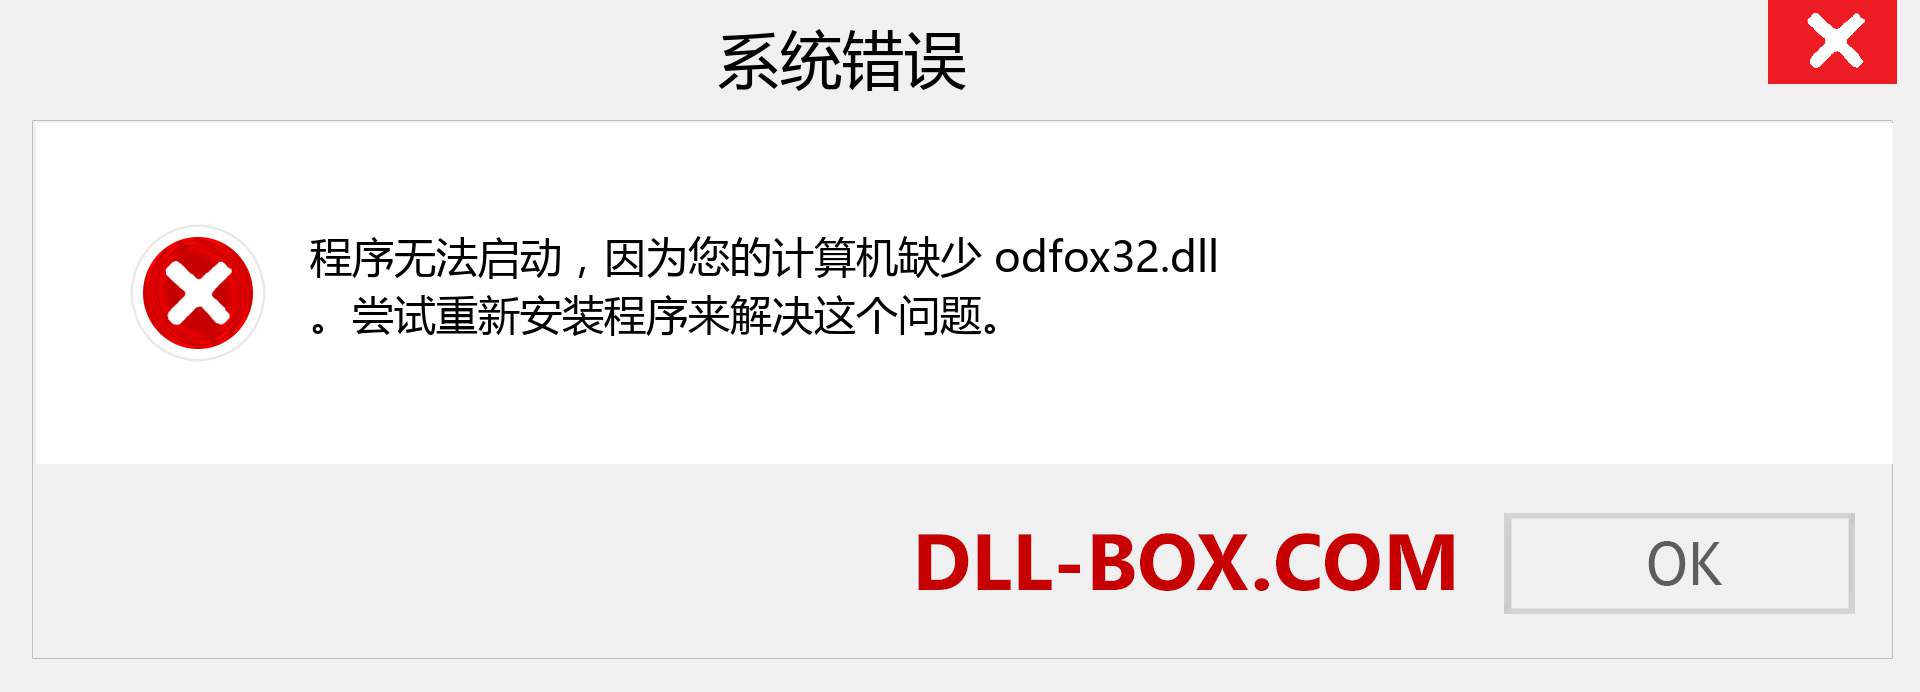 odfox32.dll 文件丢失？。 适用于 Windows 7、8、10 的下载 - 修复 Windows、照片、图像上的 odfox32 dll 丢失错误